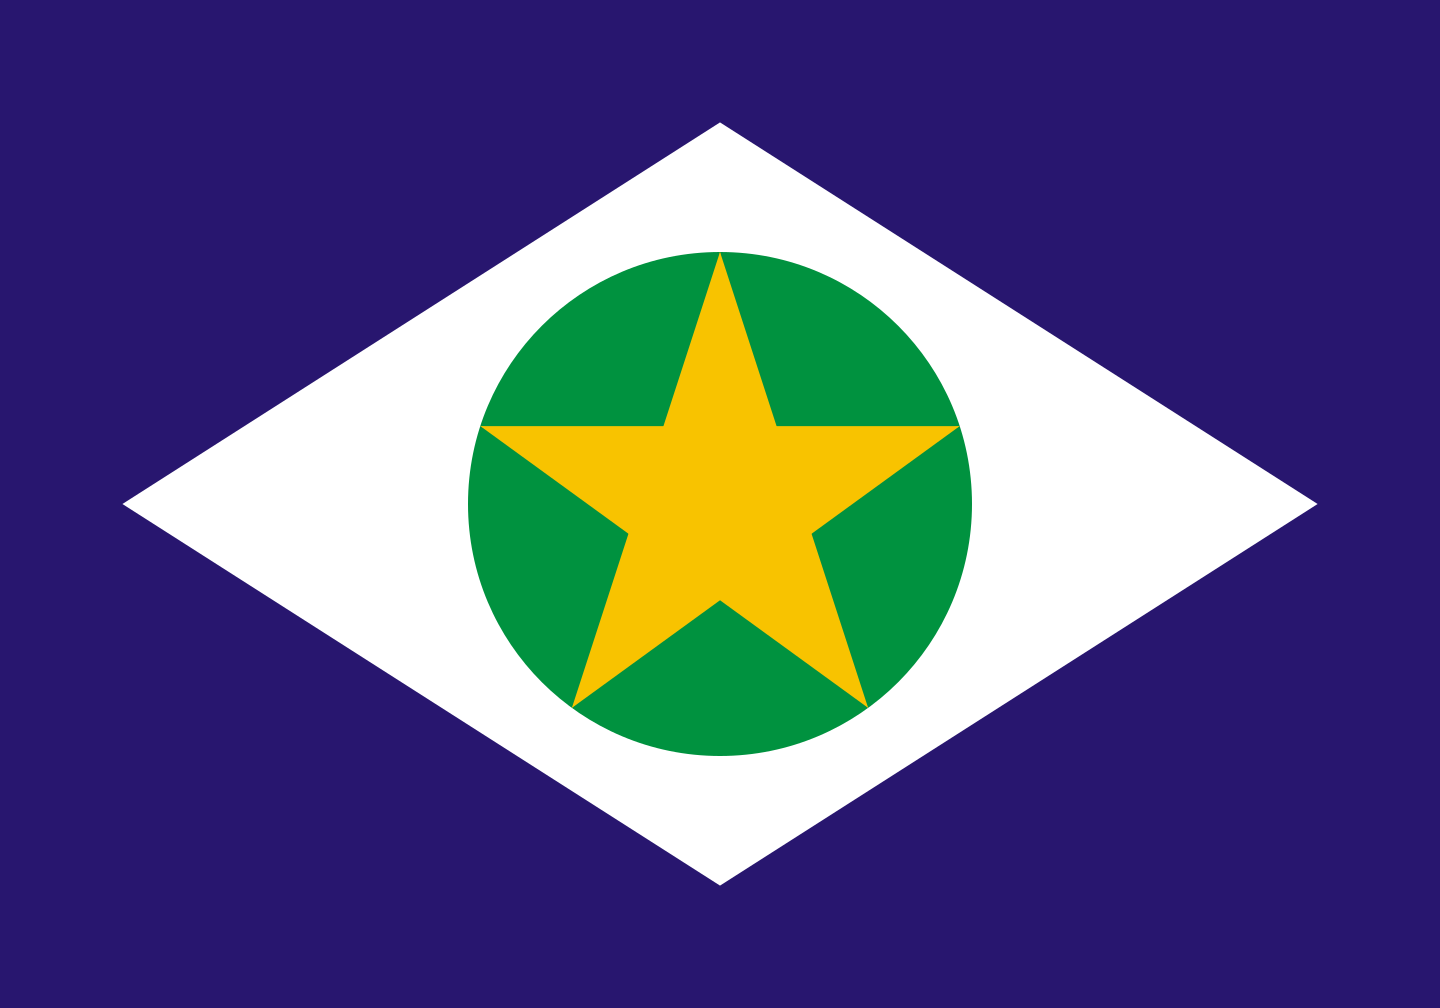 Hino do Estado do Mato Grosso.